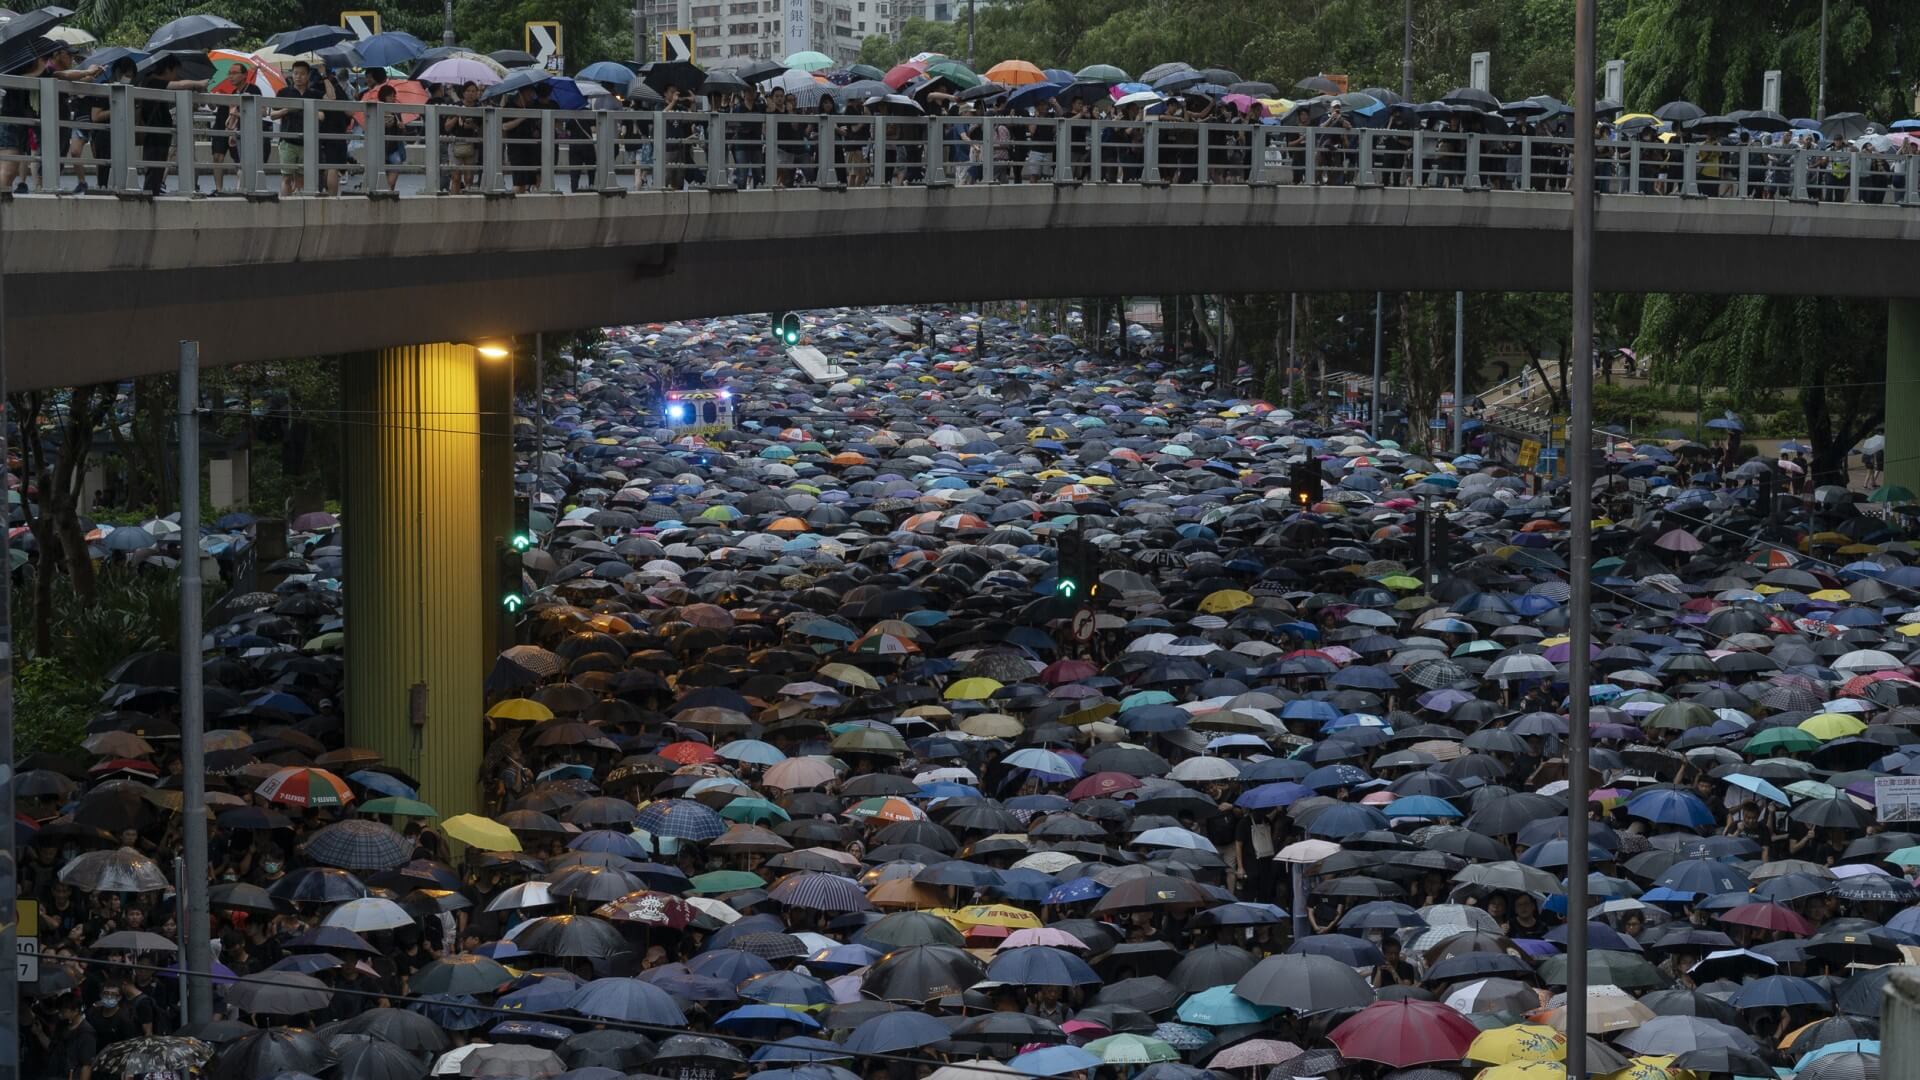 03 雨傘革命，香港，2019年8月18日 ©張乾琦、馬格蘭攝影通訊社-圖片